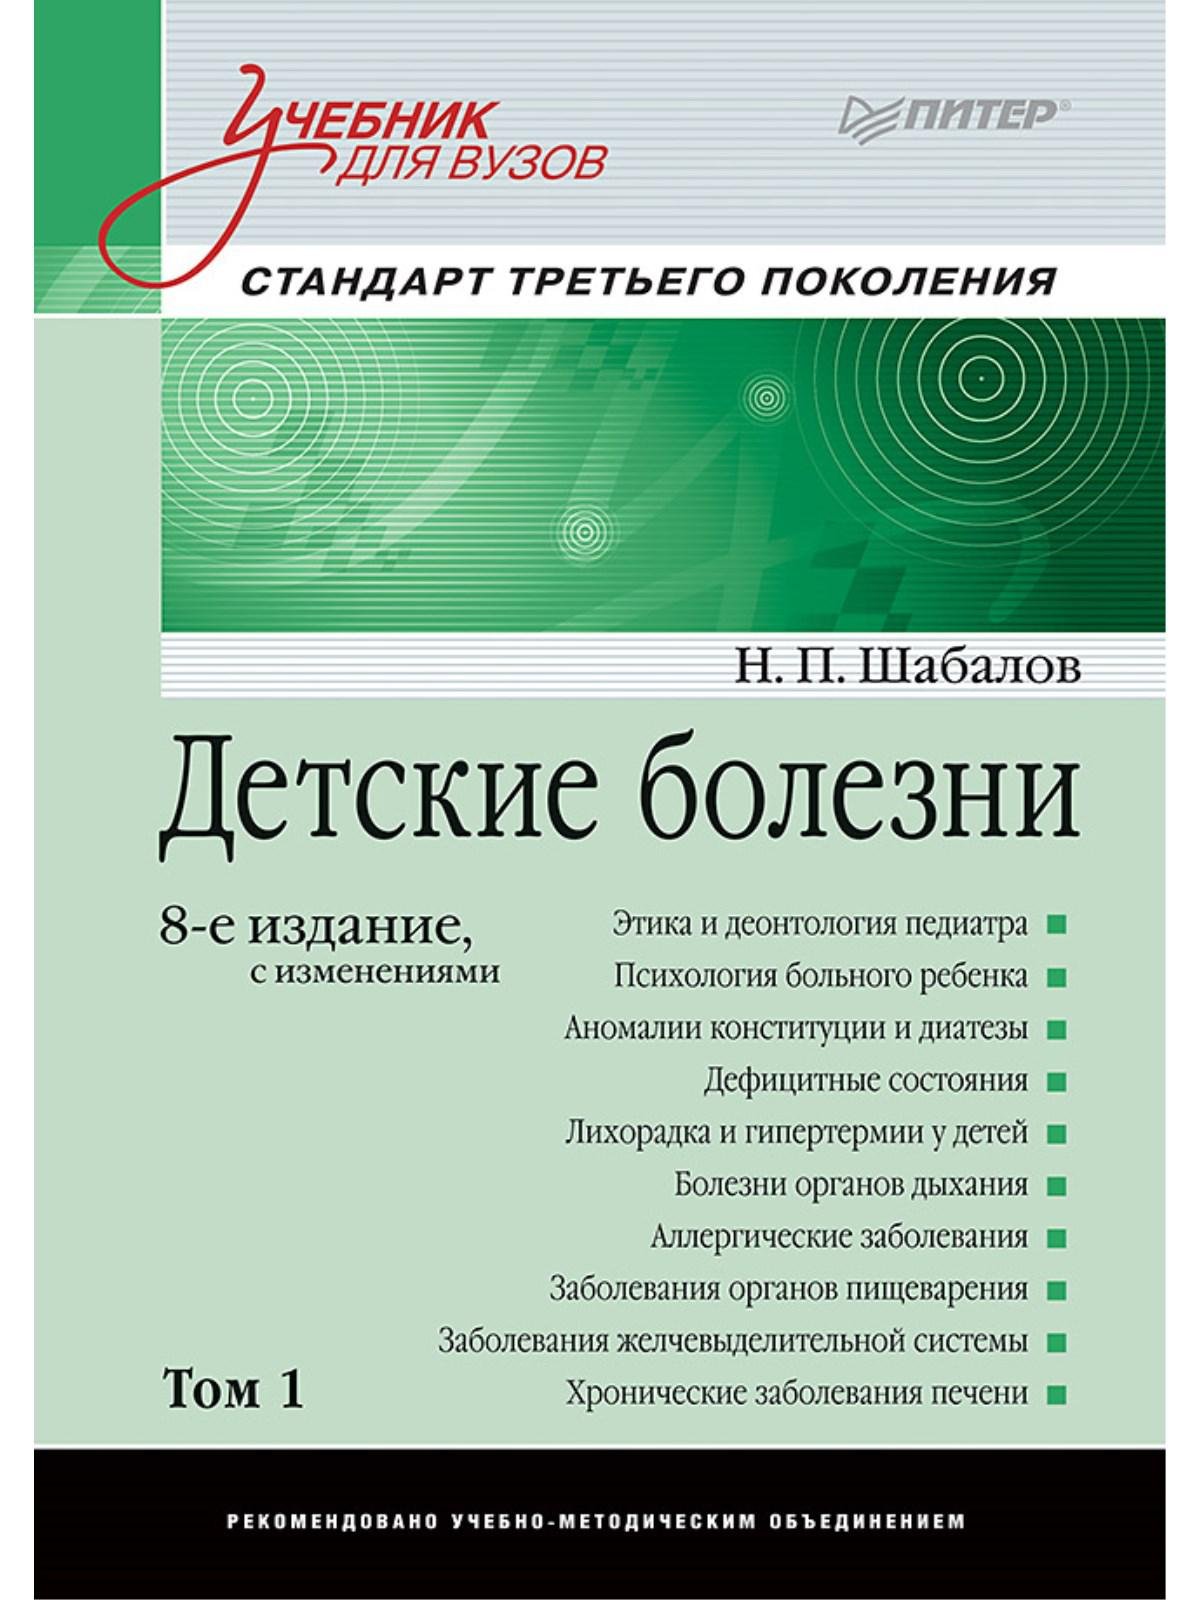 Шабалов Н. - Детские болезни: Учебник для вузов (том 1). 8-е изд. с изменениями переработанное и дополненное